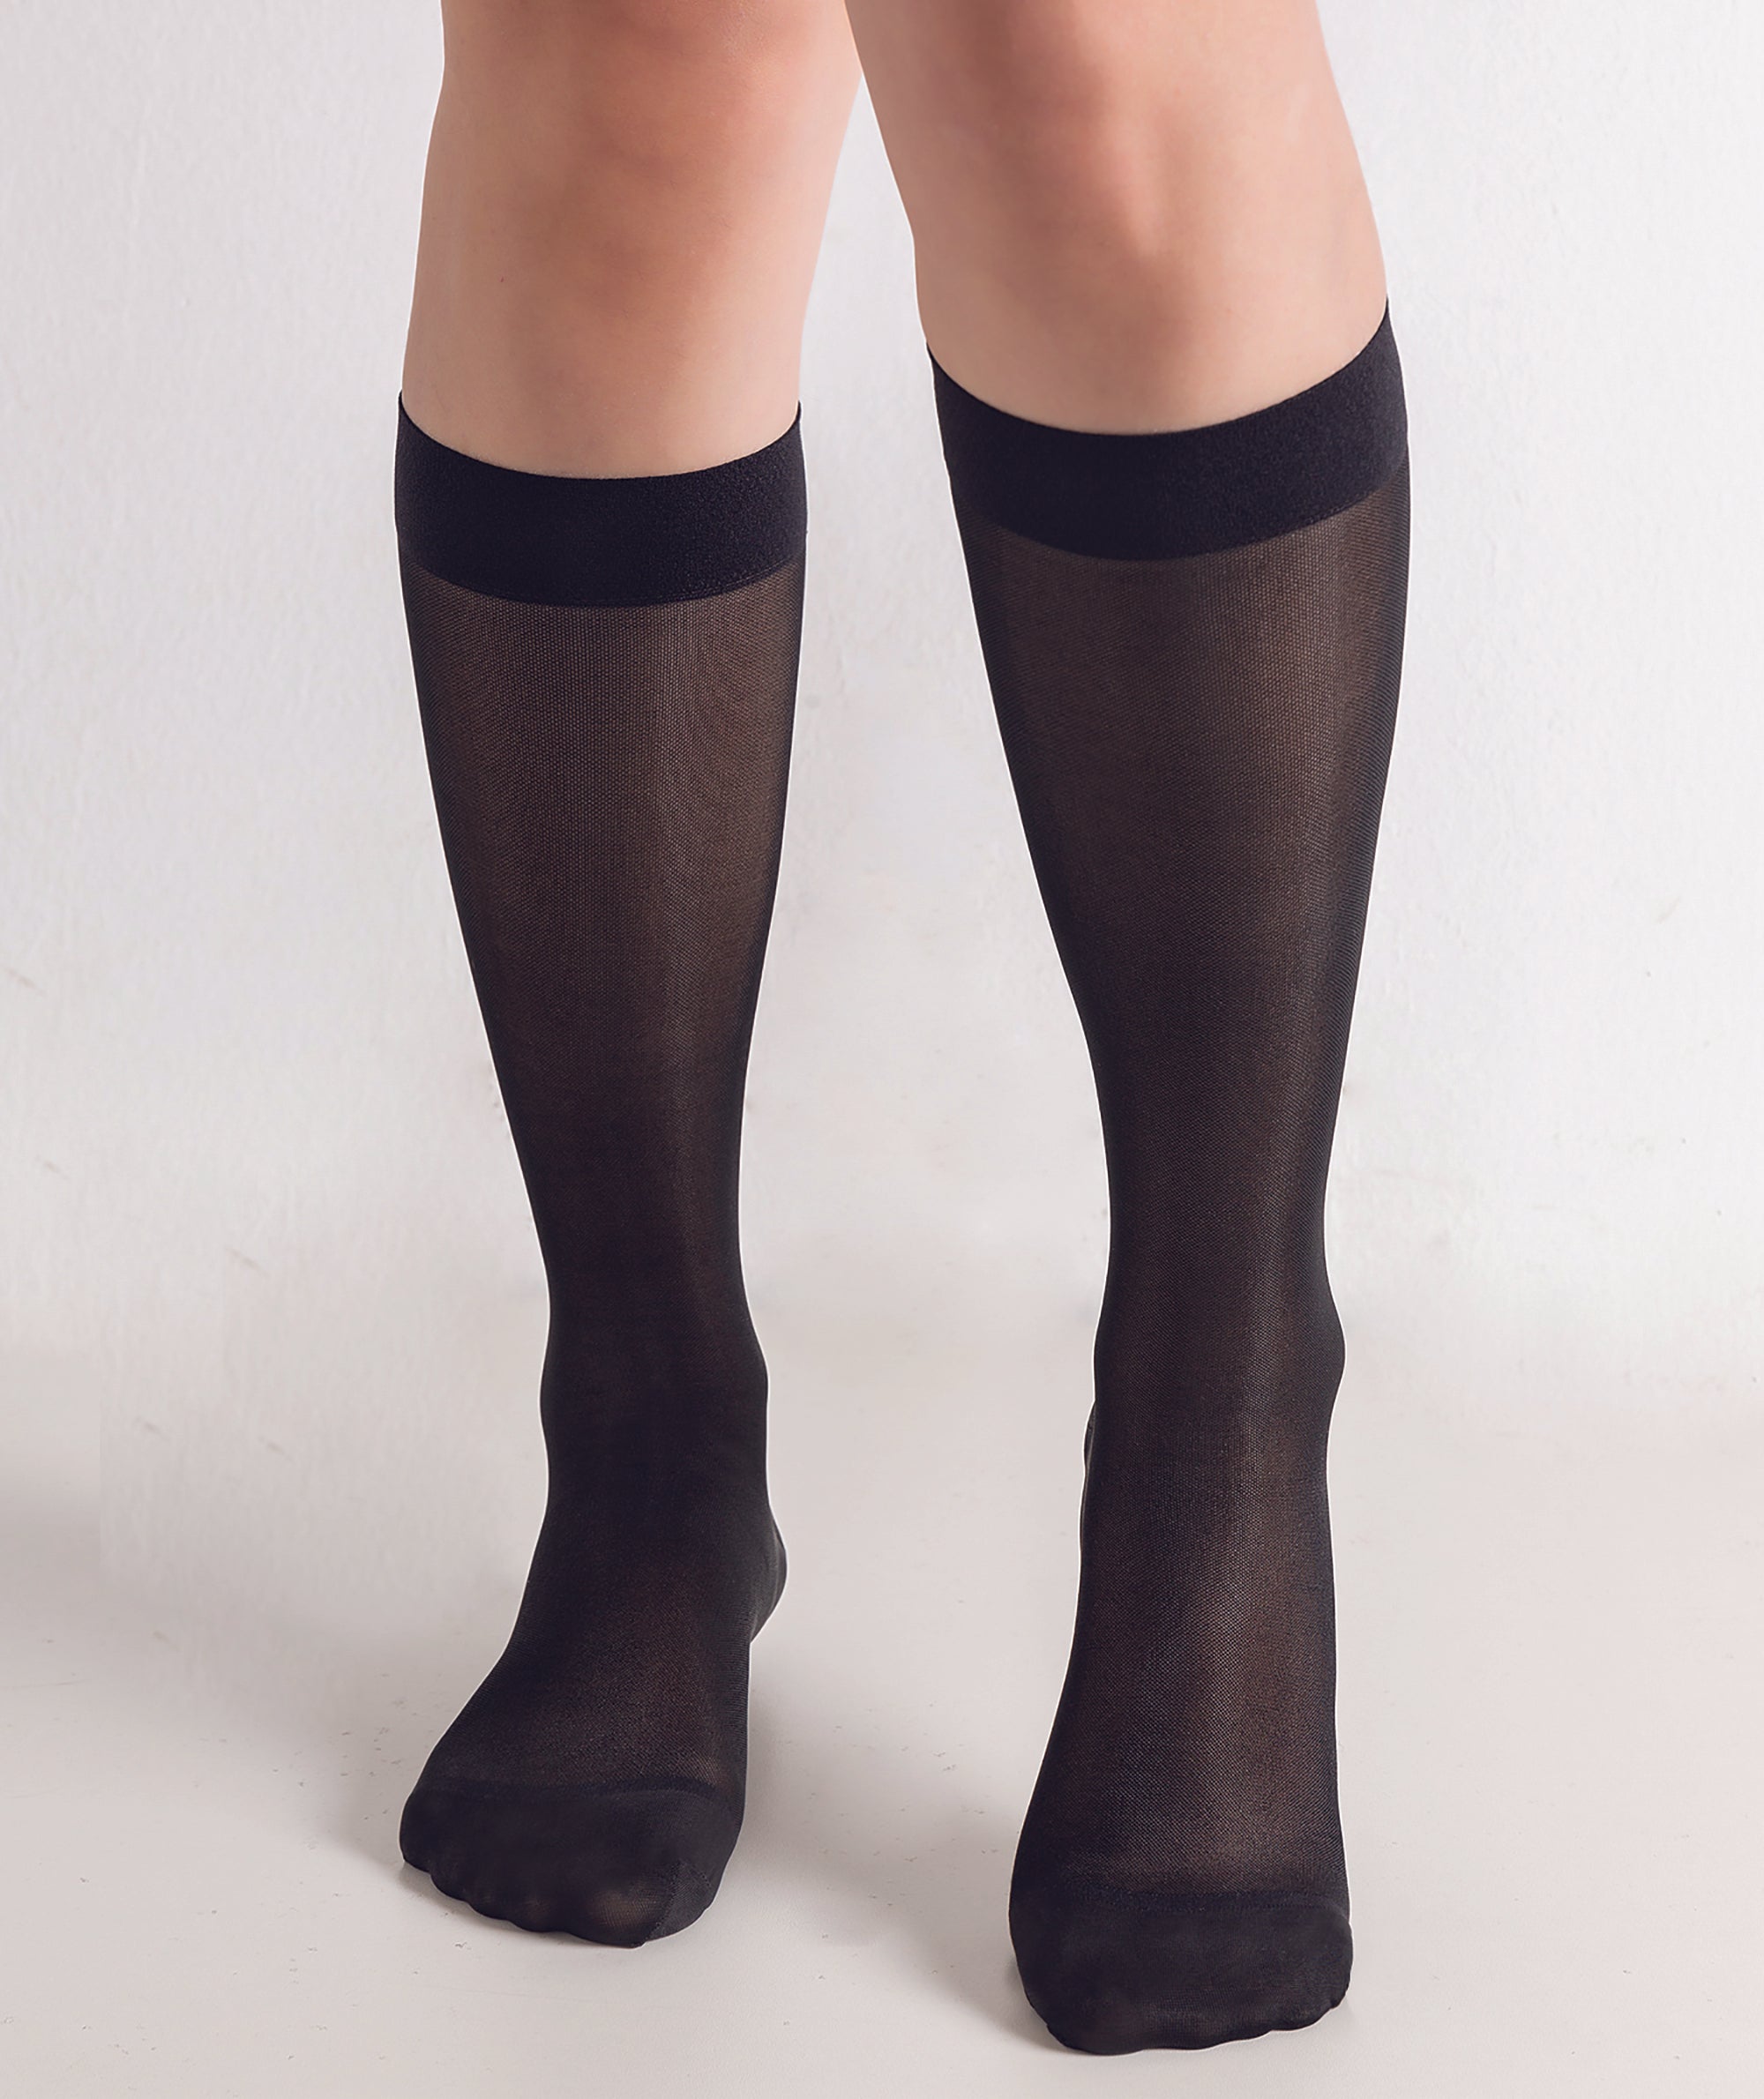 Women's Compression Knee Socks 20-30 mm Hg, Black – BIOS Medical